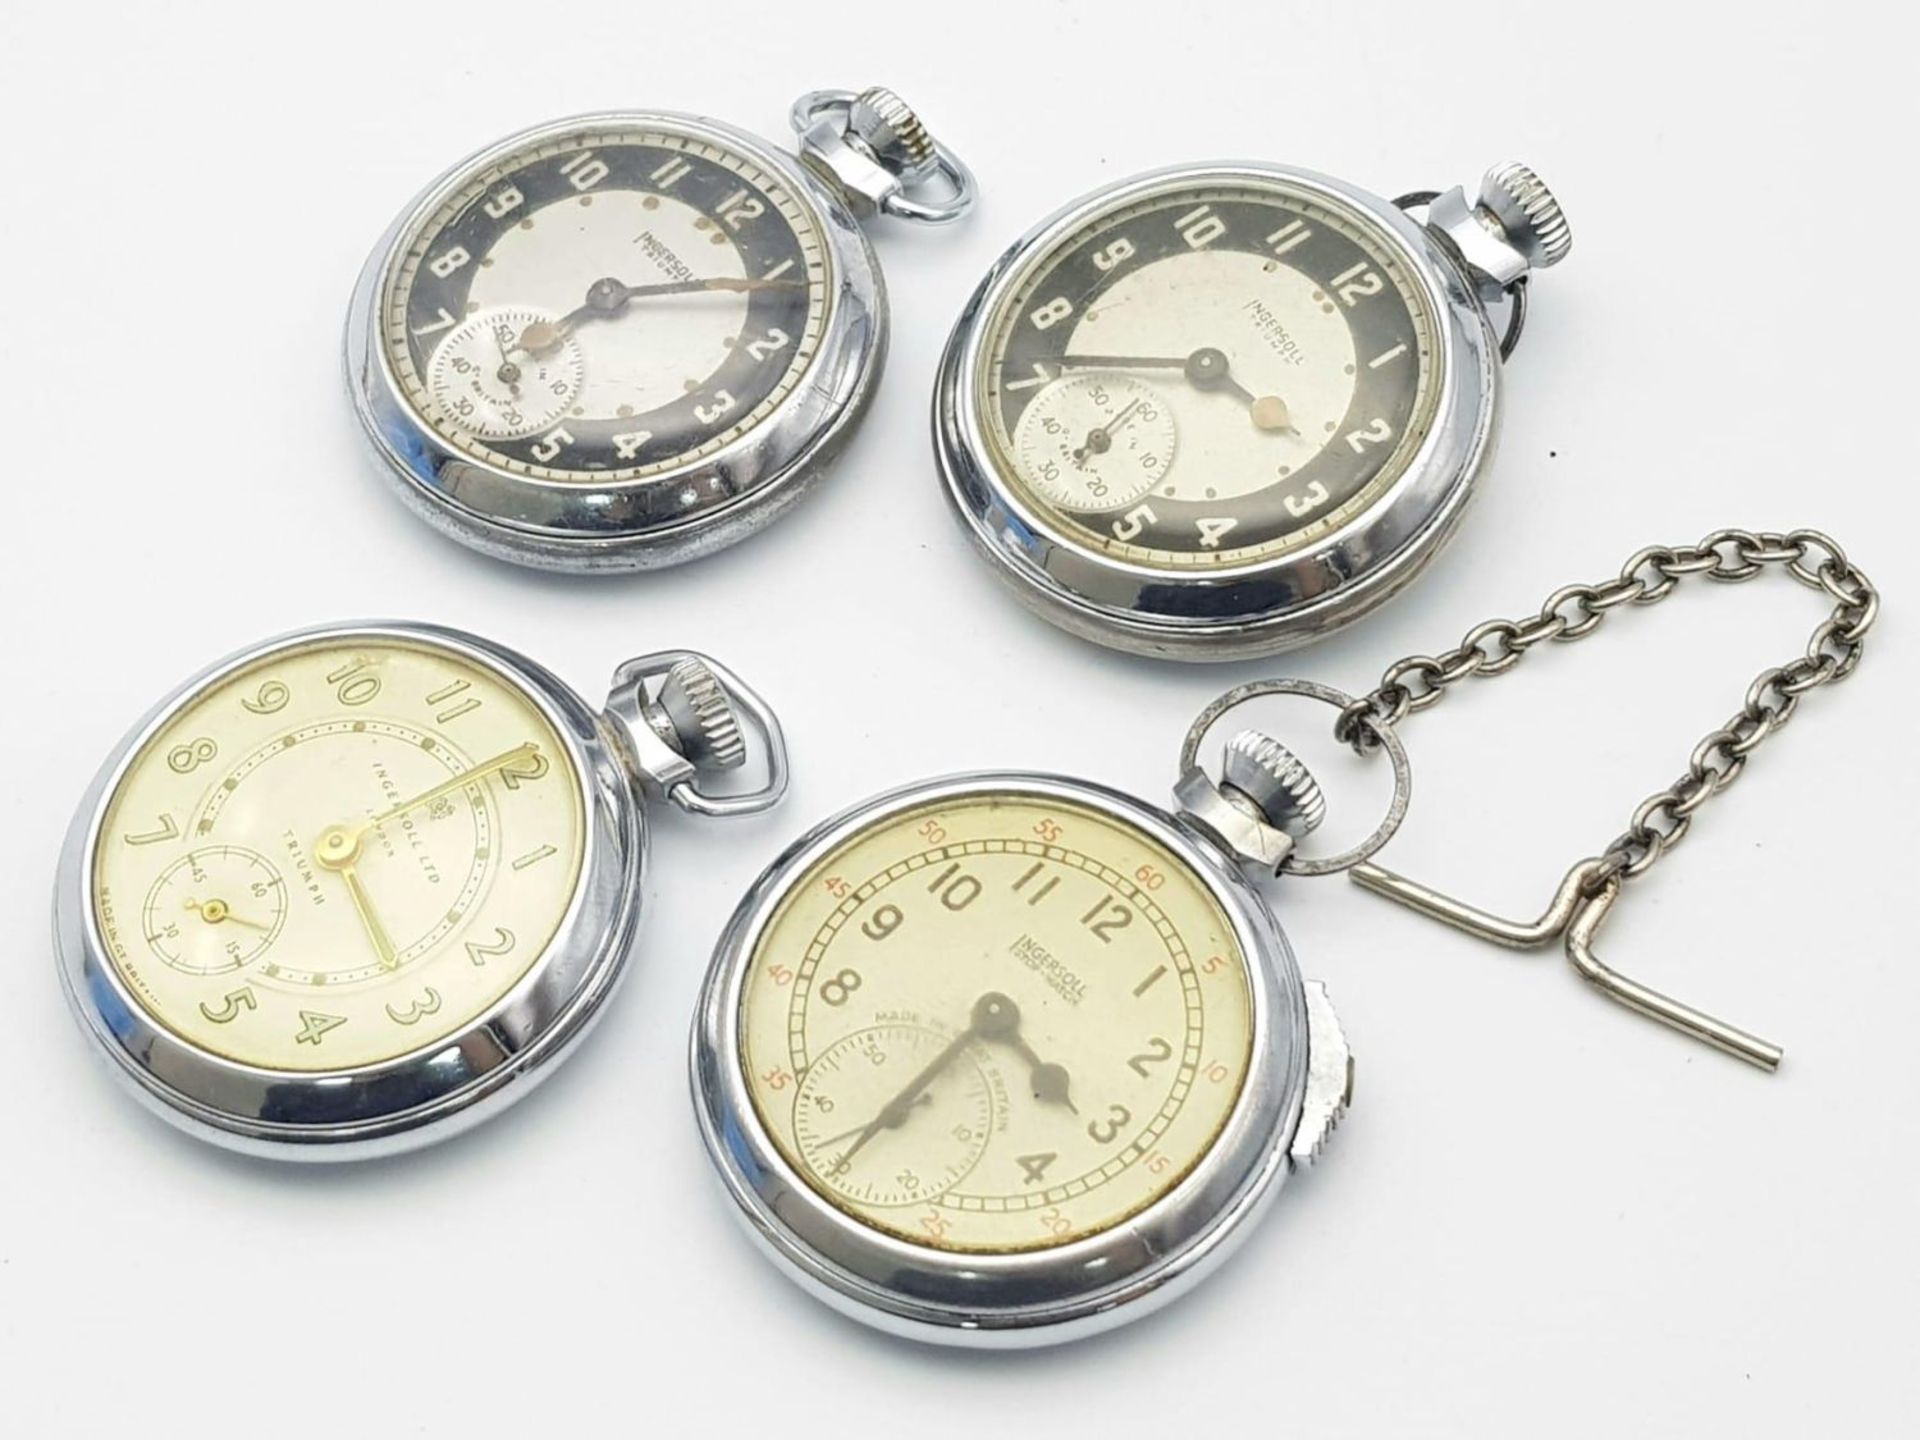 Four Vintage Ingersoll Pocket Watches - Two work but temperamental so as found. 51mm largest case. - Bild 3 aus 10